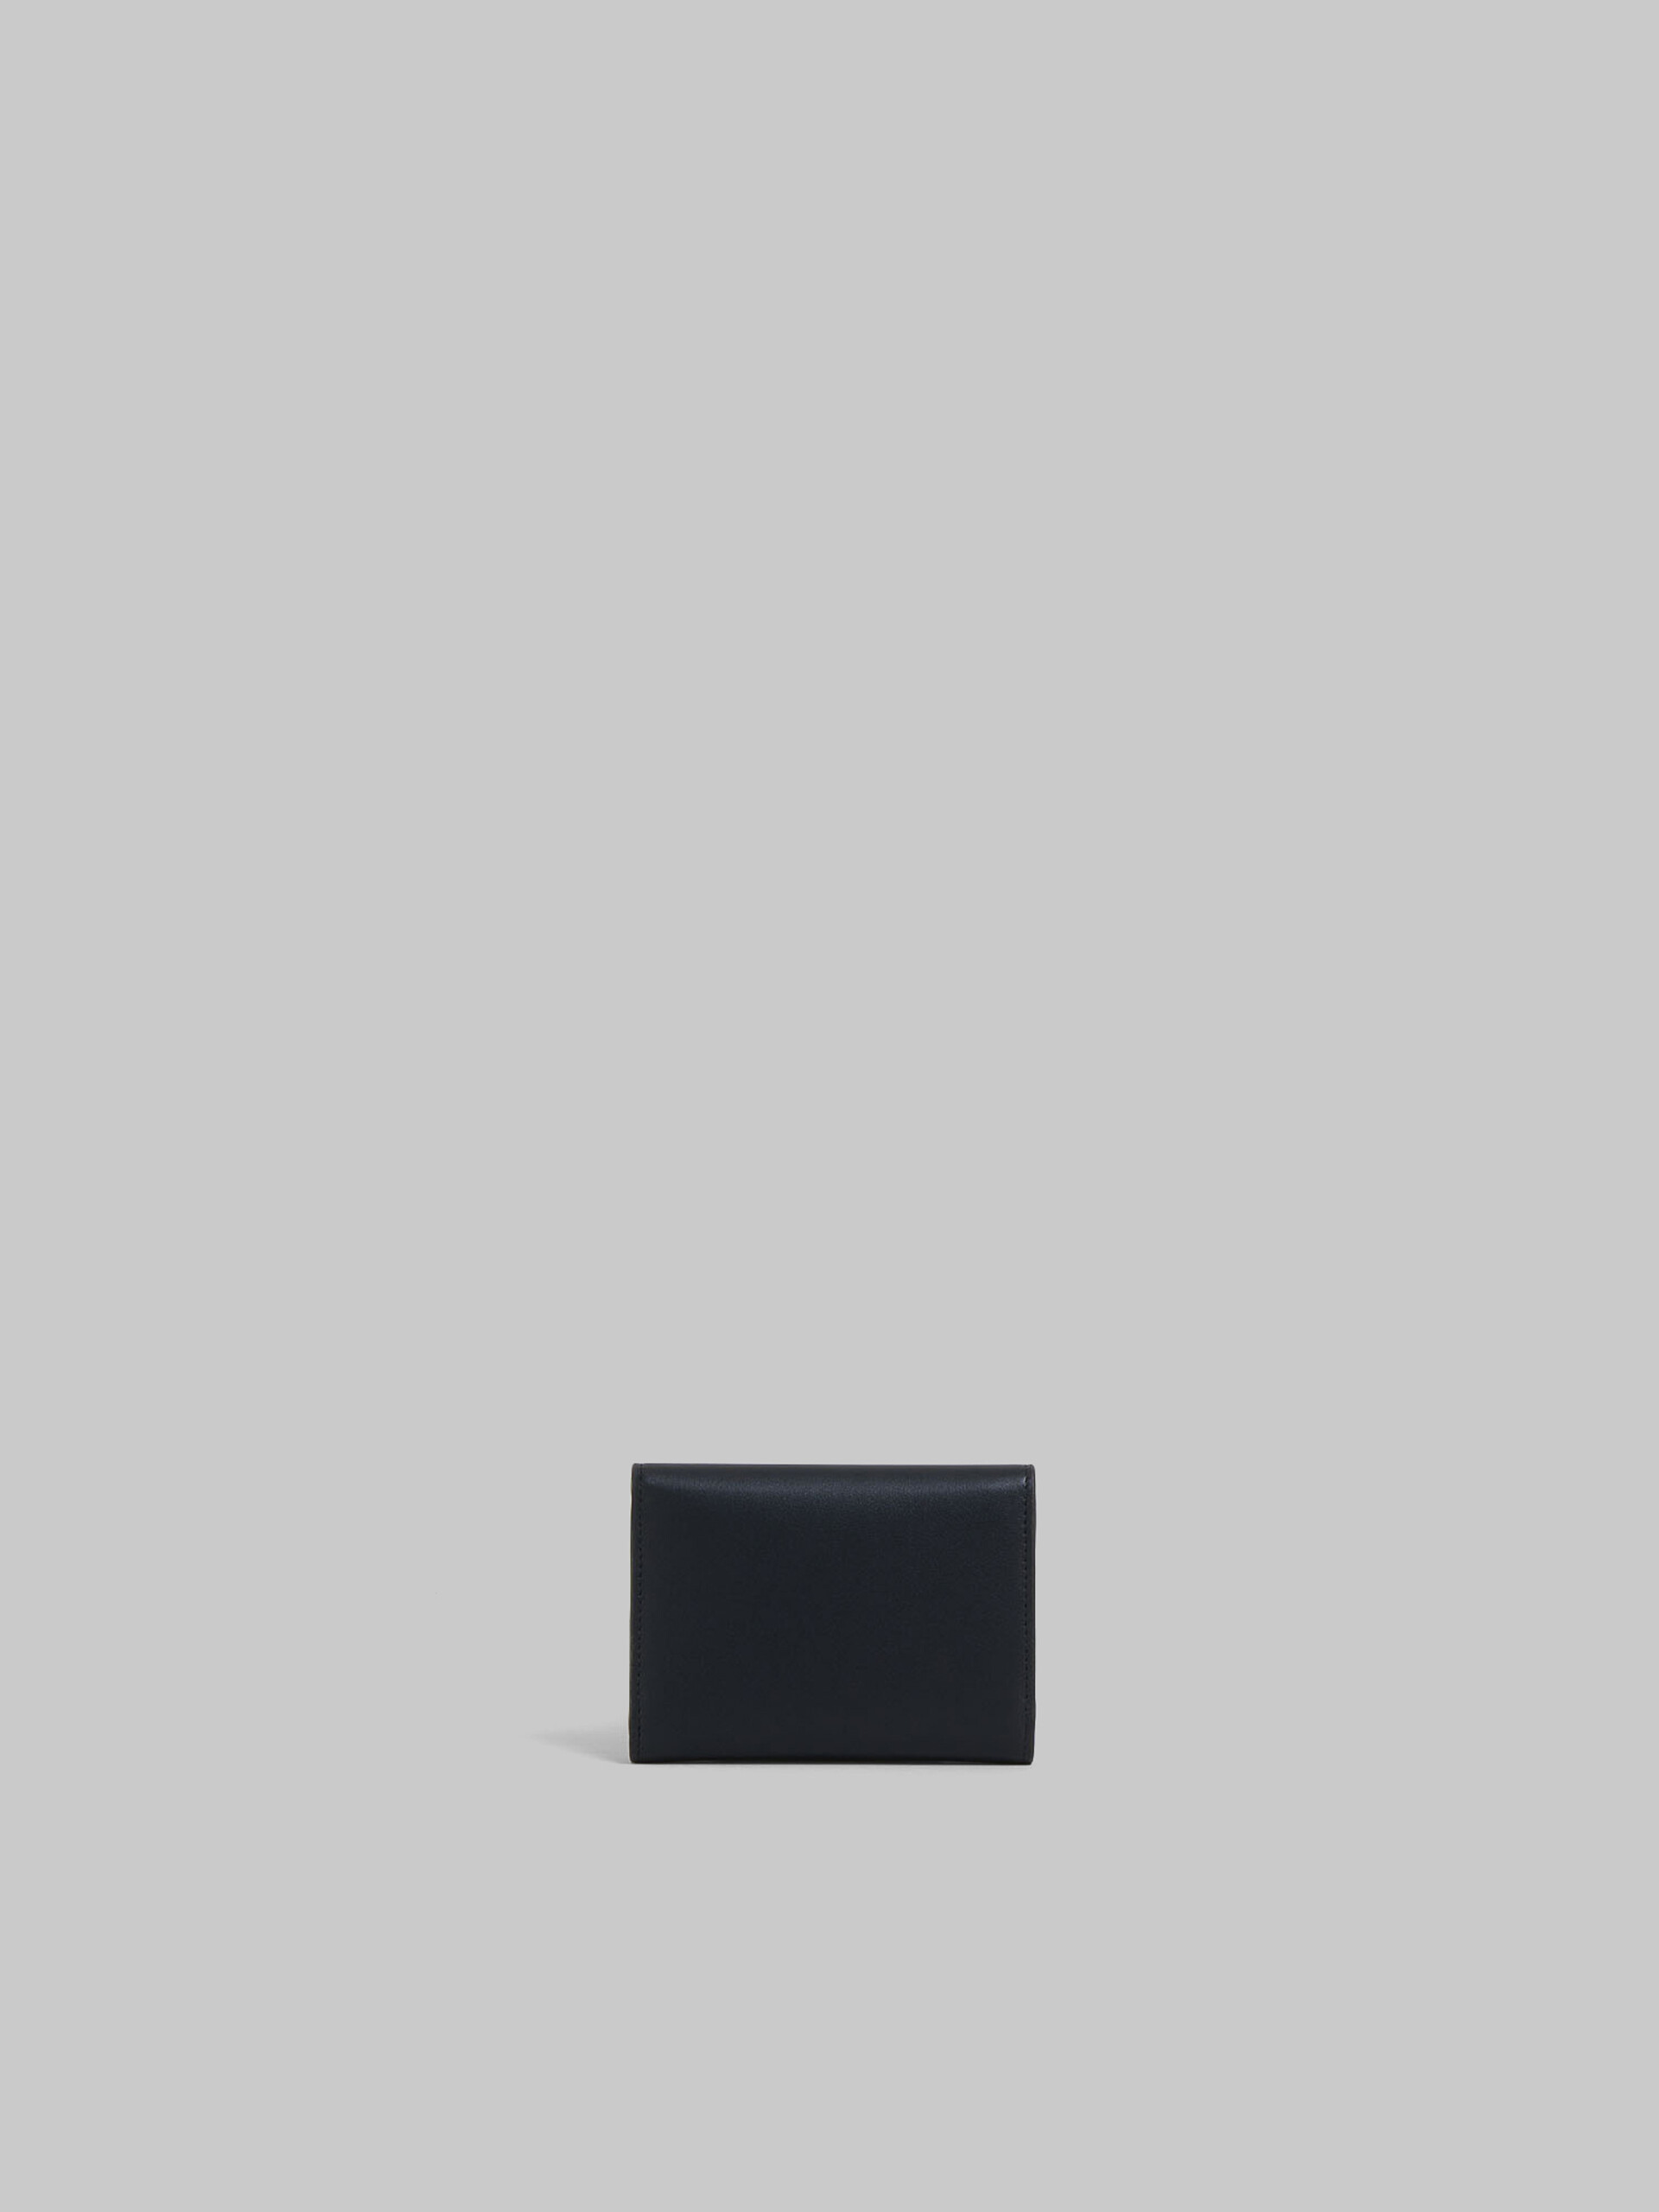 ブルー レザー製 Trunkaroo 三つ折りウォレット - 財布 - Image 3